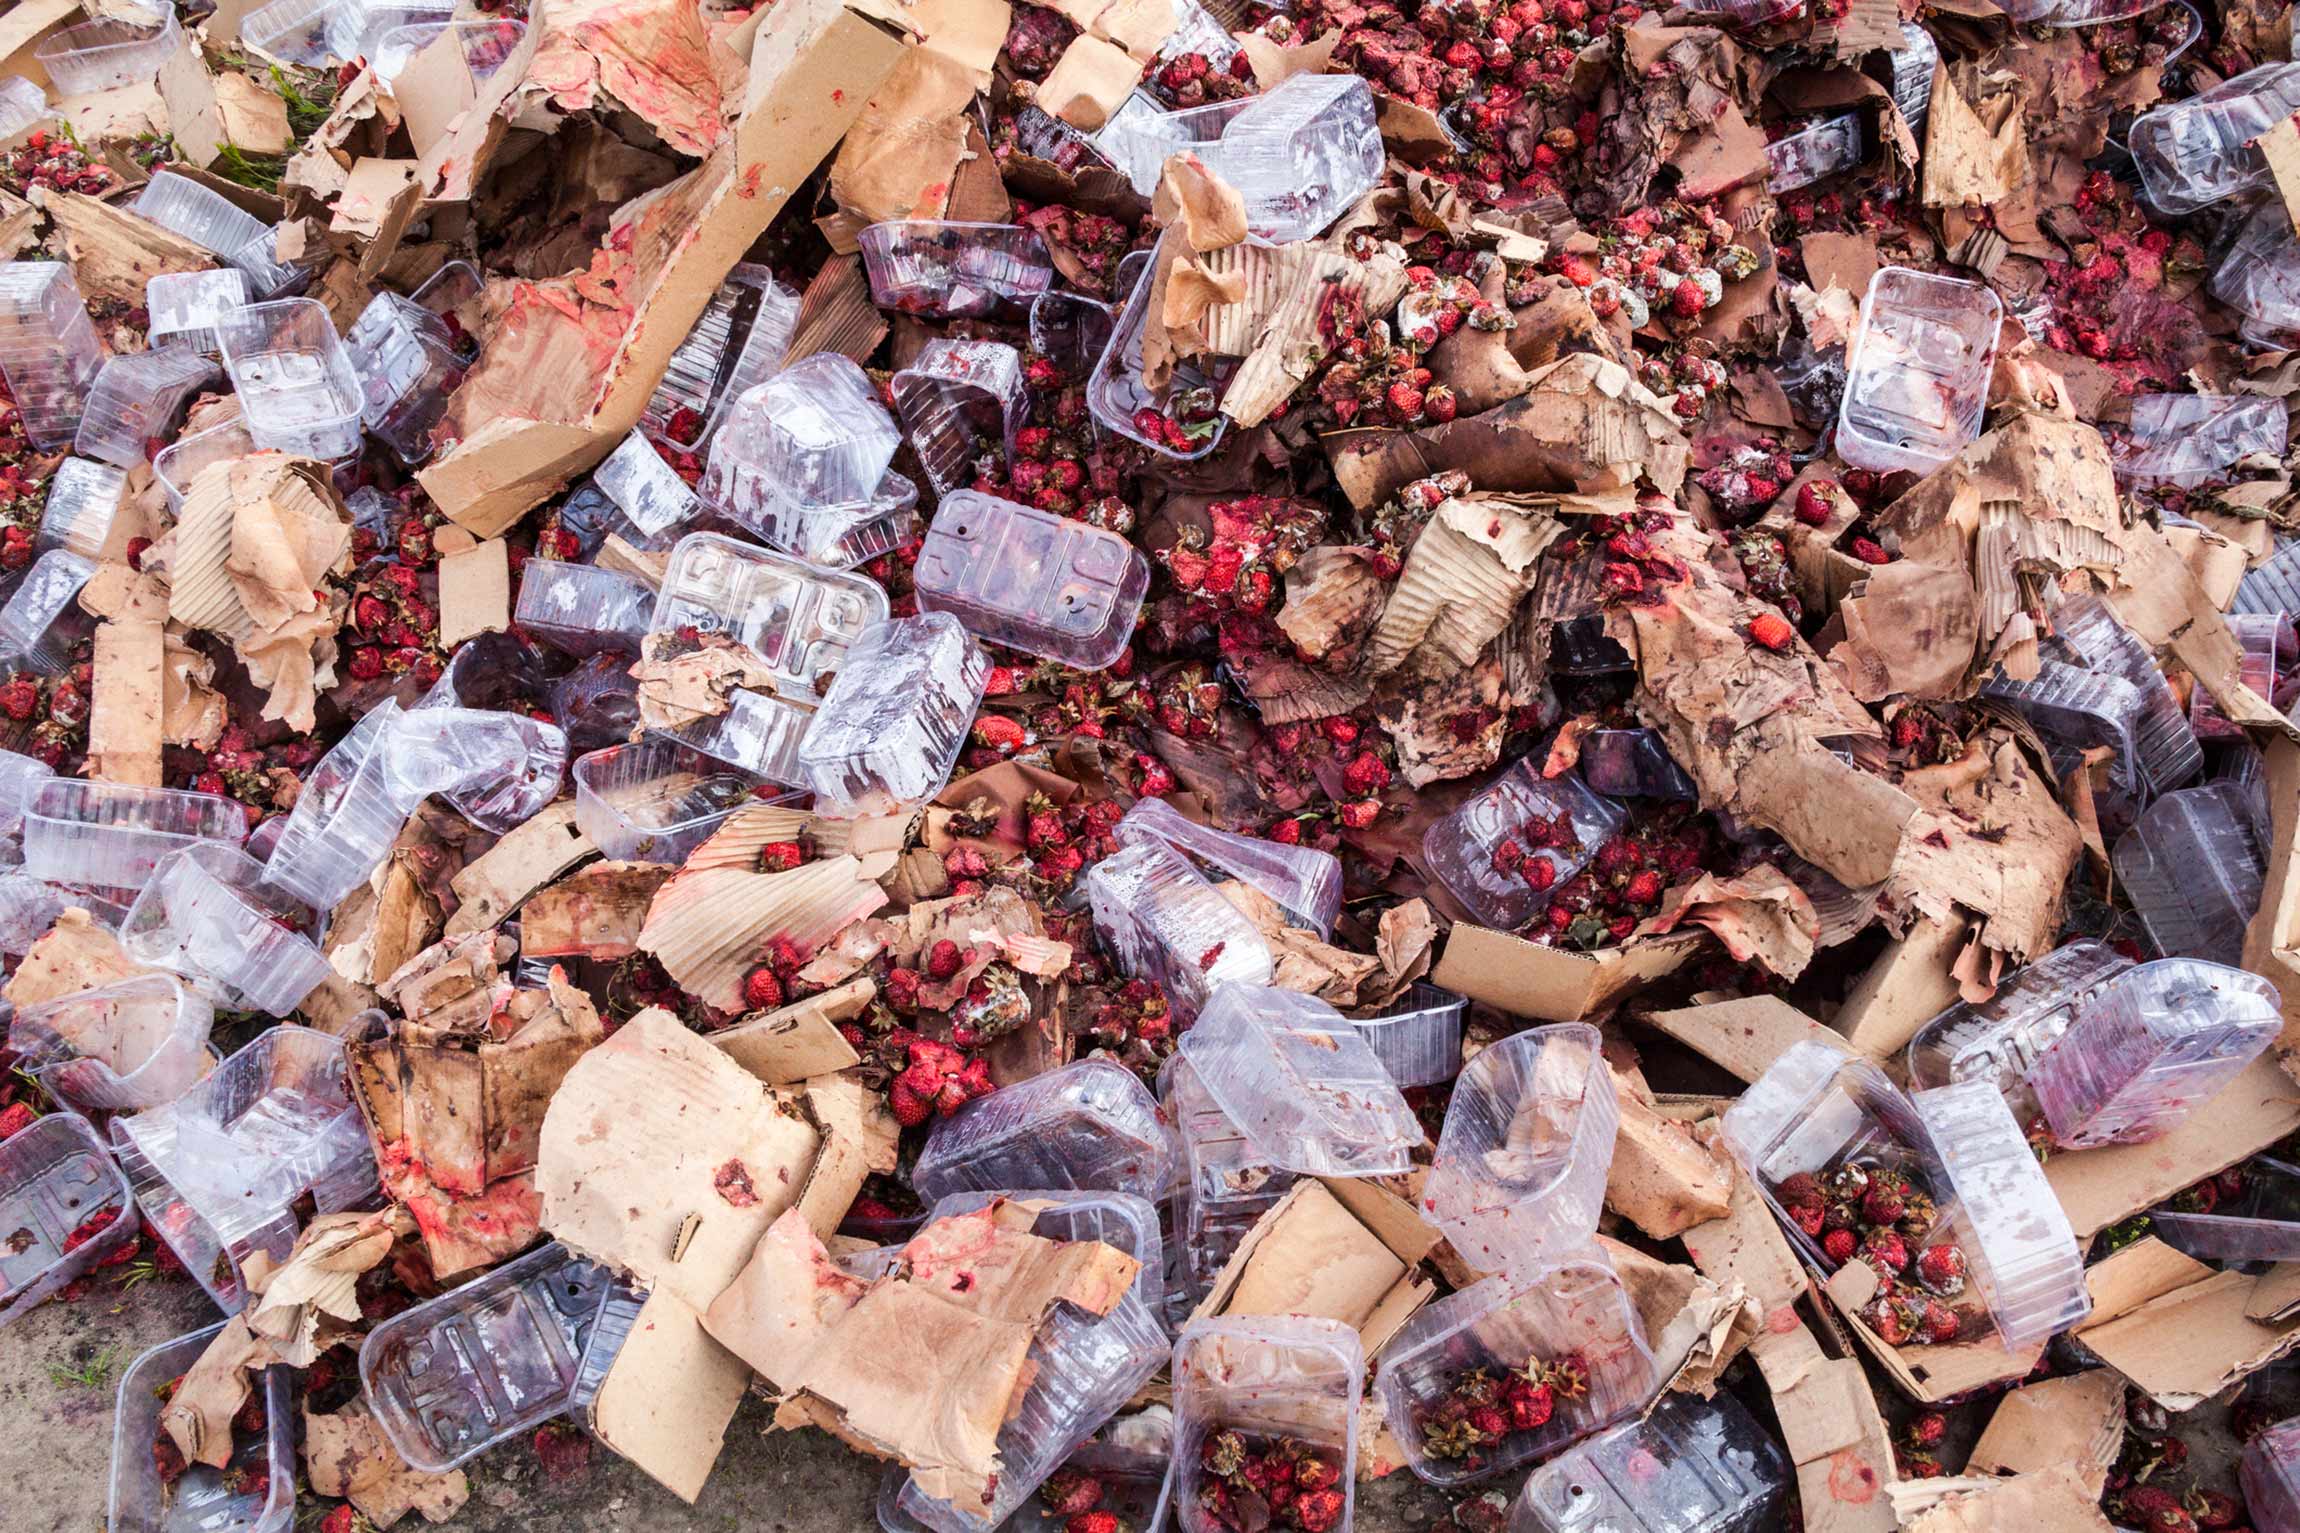 Food waste: 17 ways to help reduce food waste